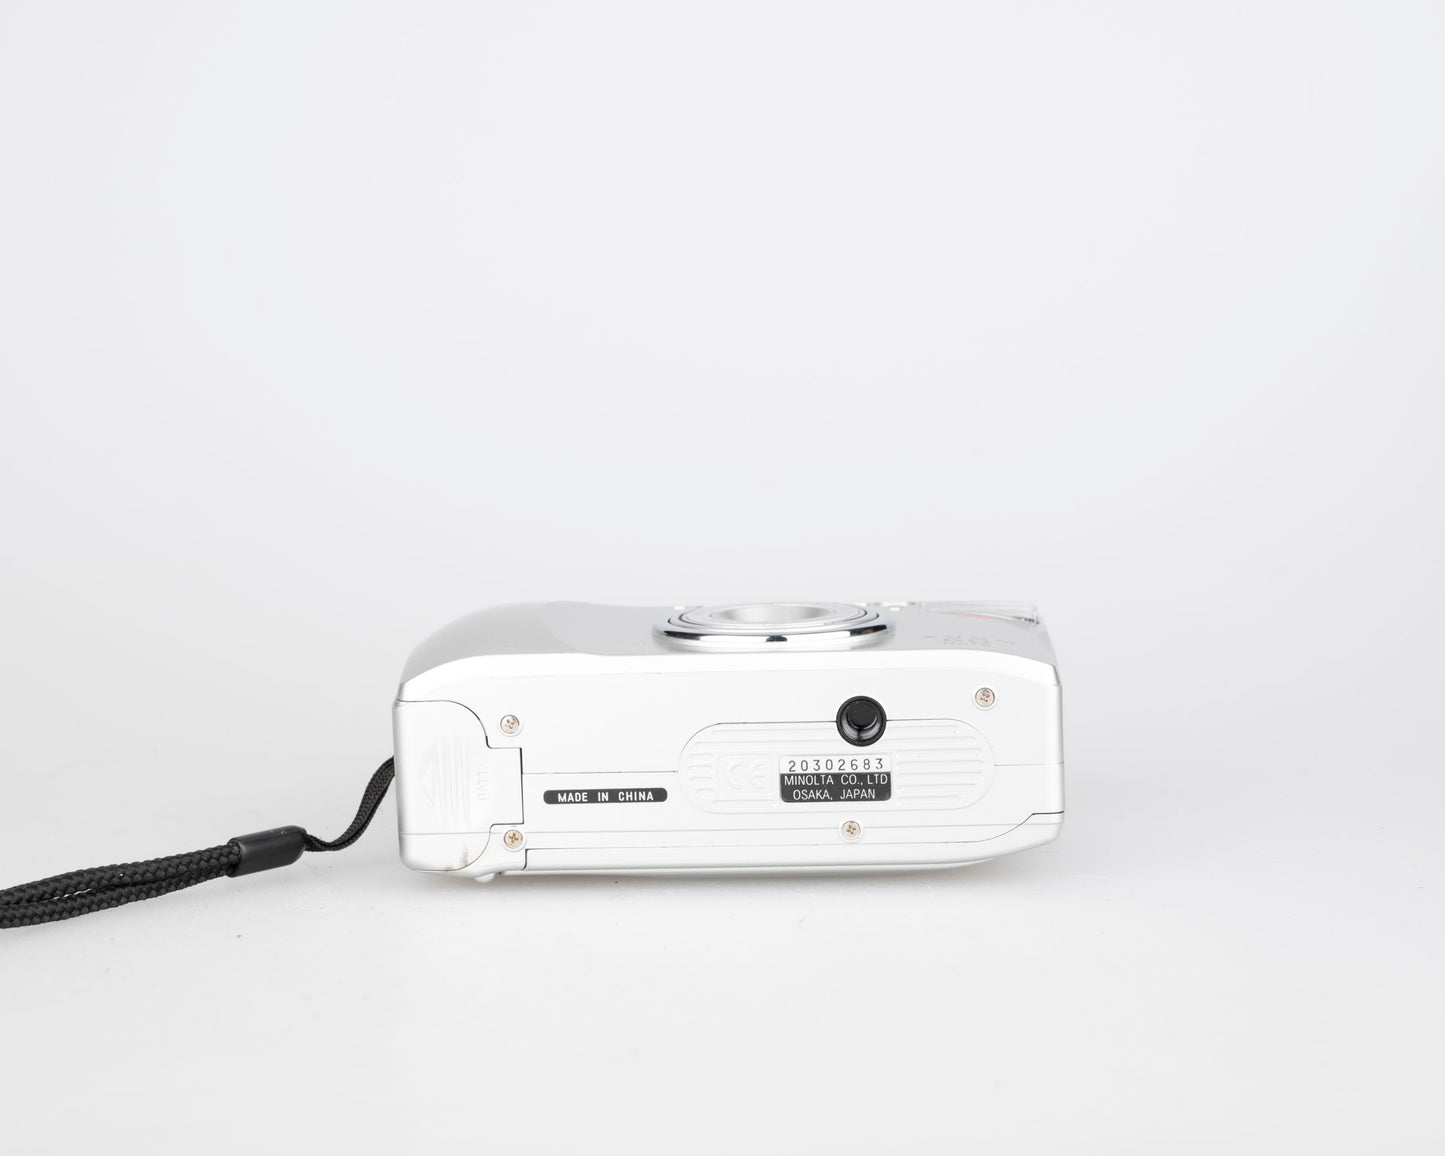 Minolta Zoom 60 Date 35mm camera w/ original box + case (serial 20302683)